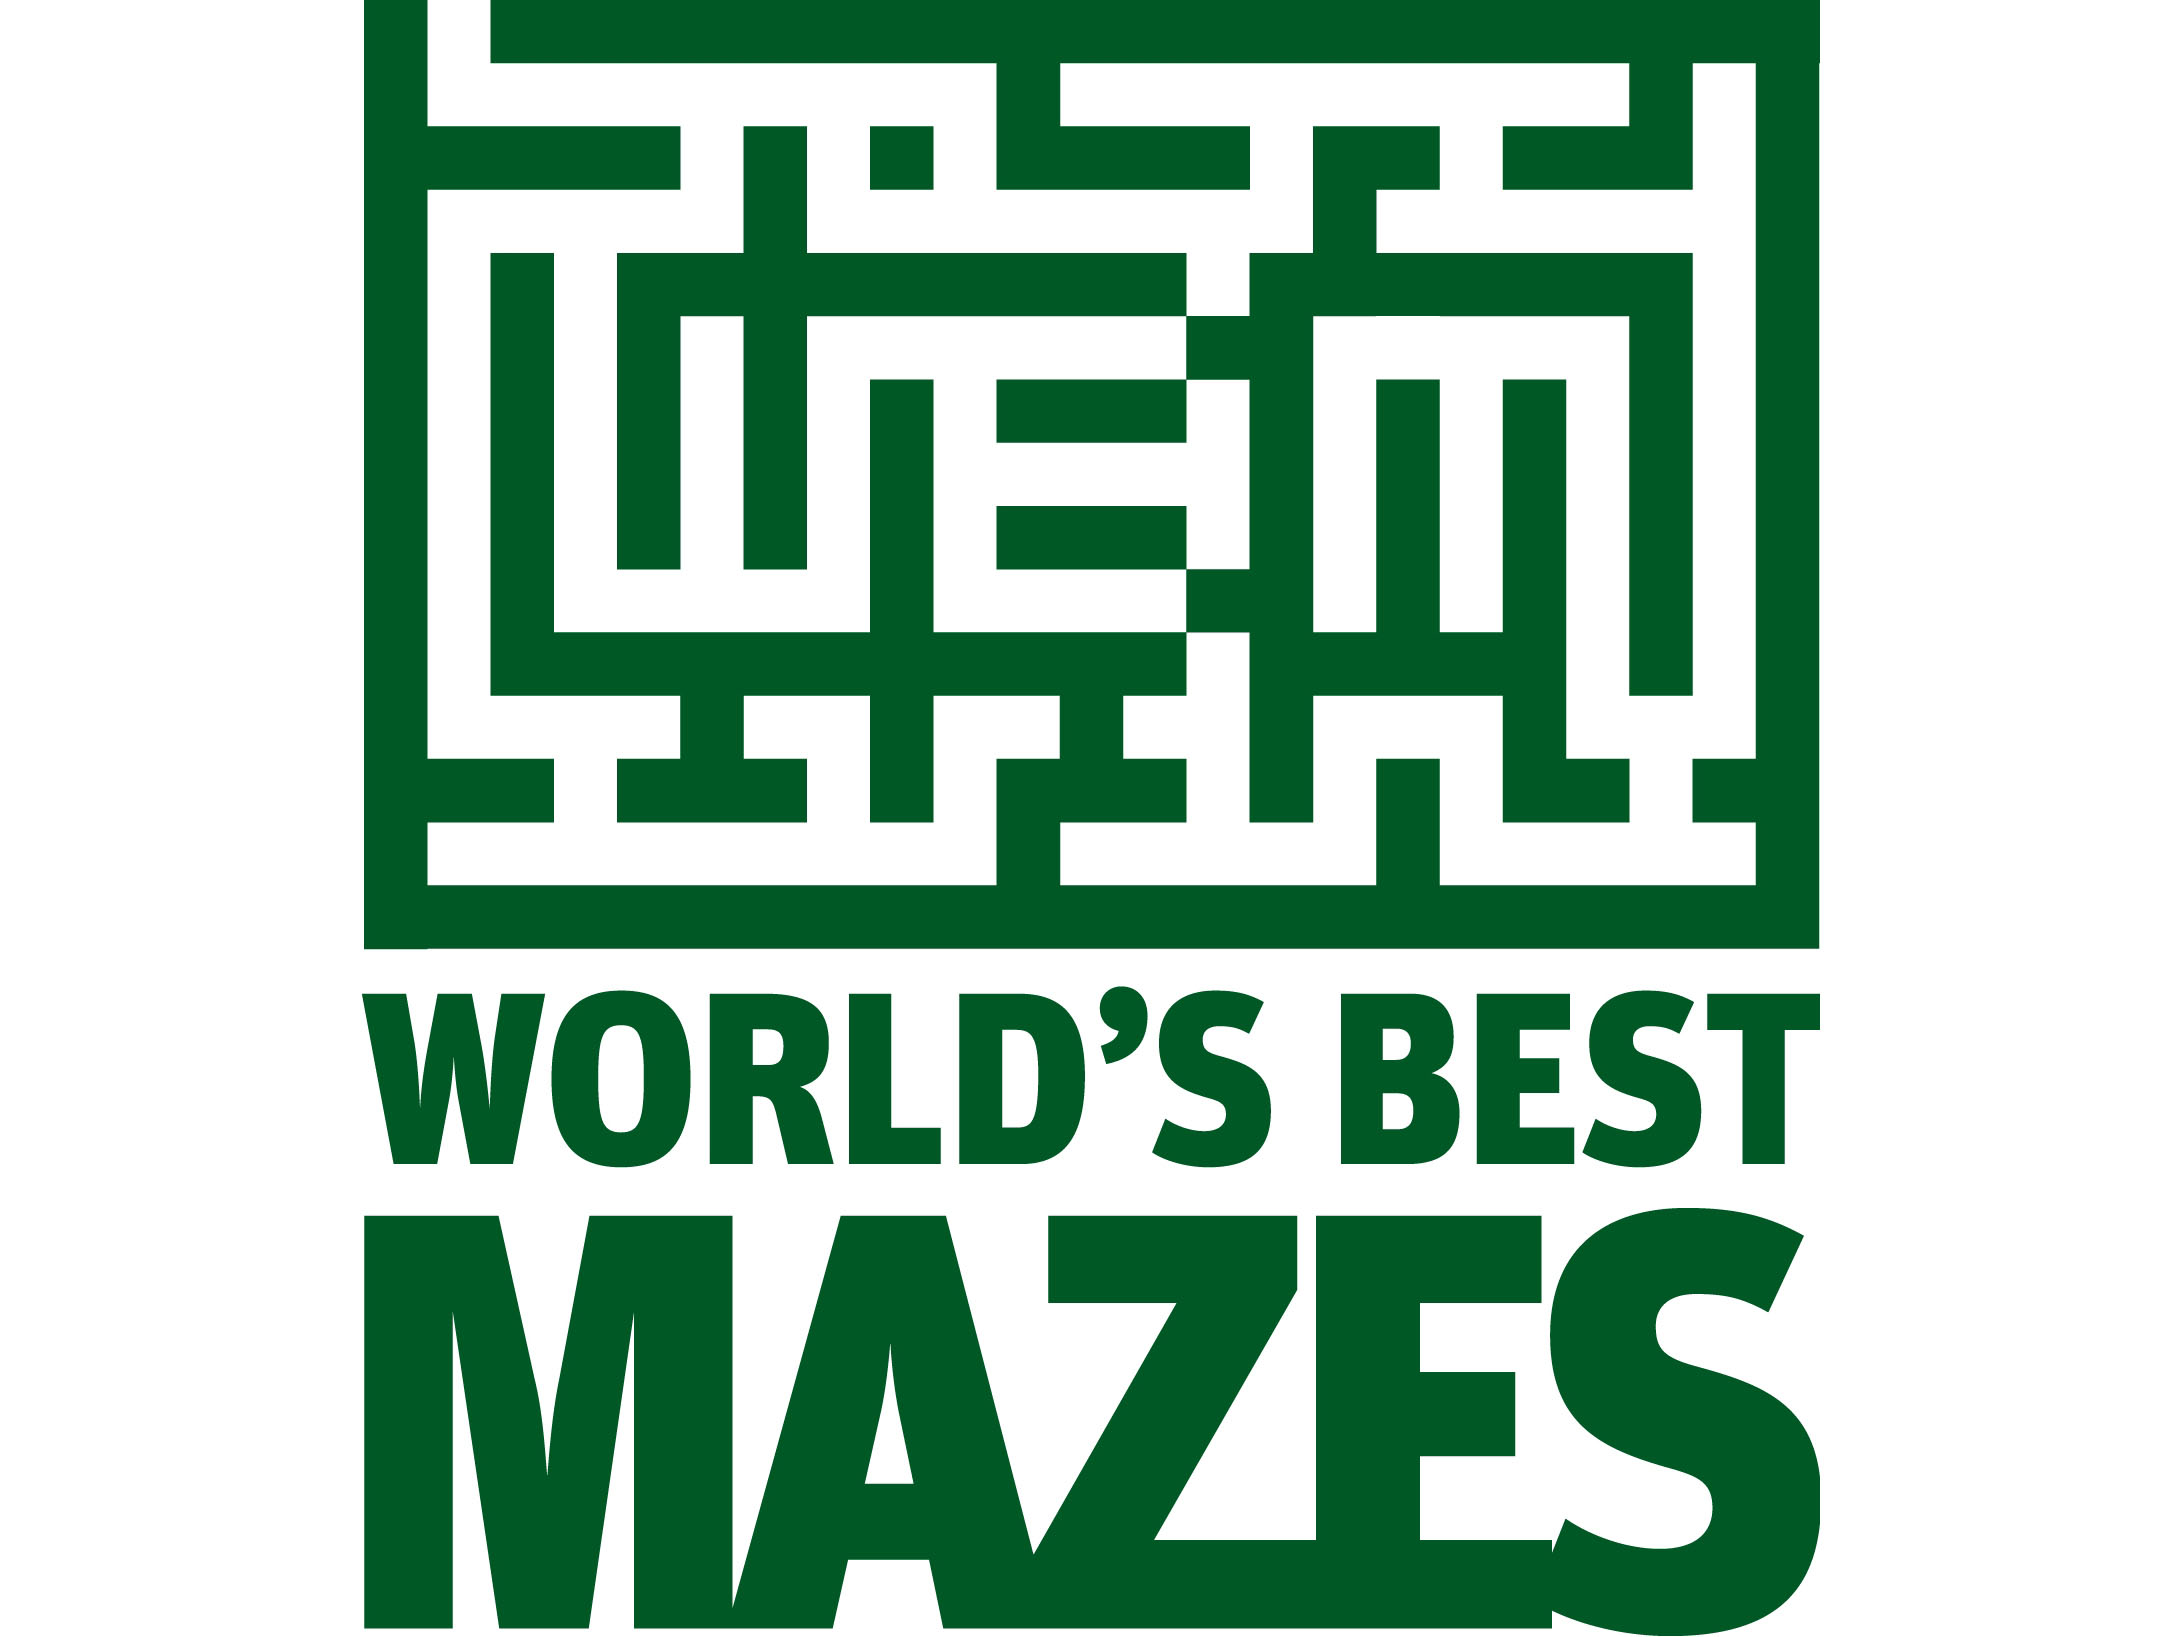 The world's 10 best mazes